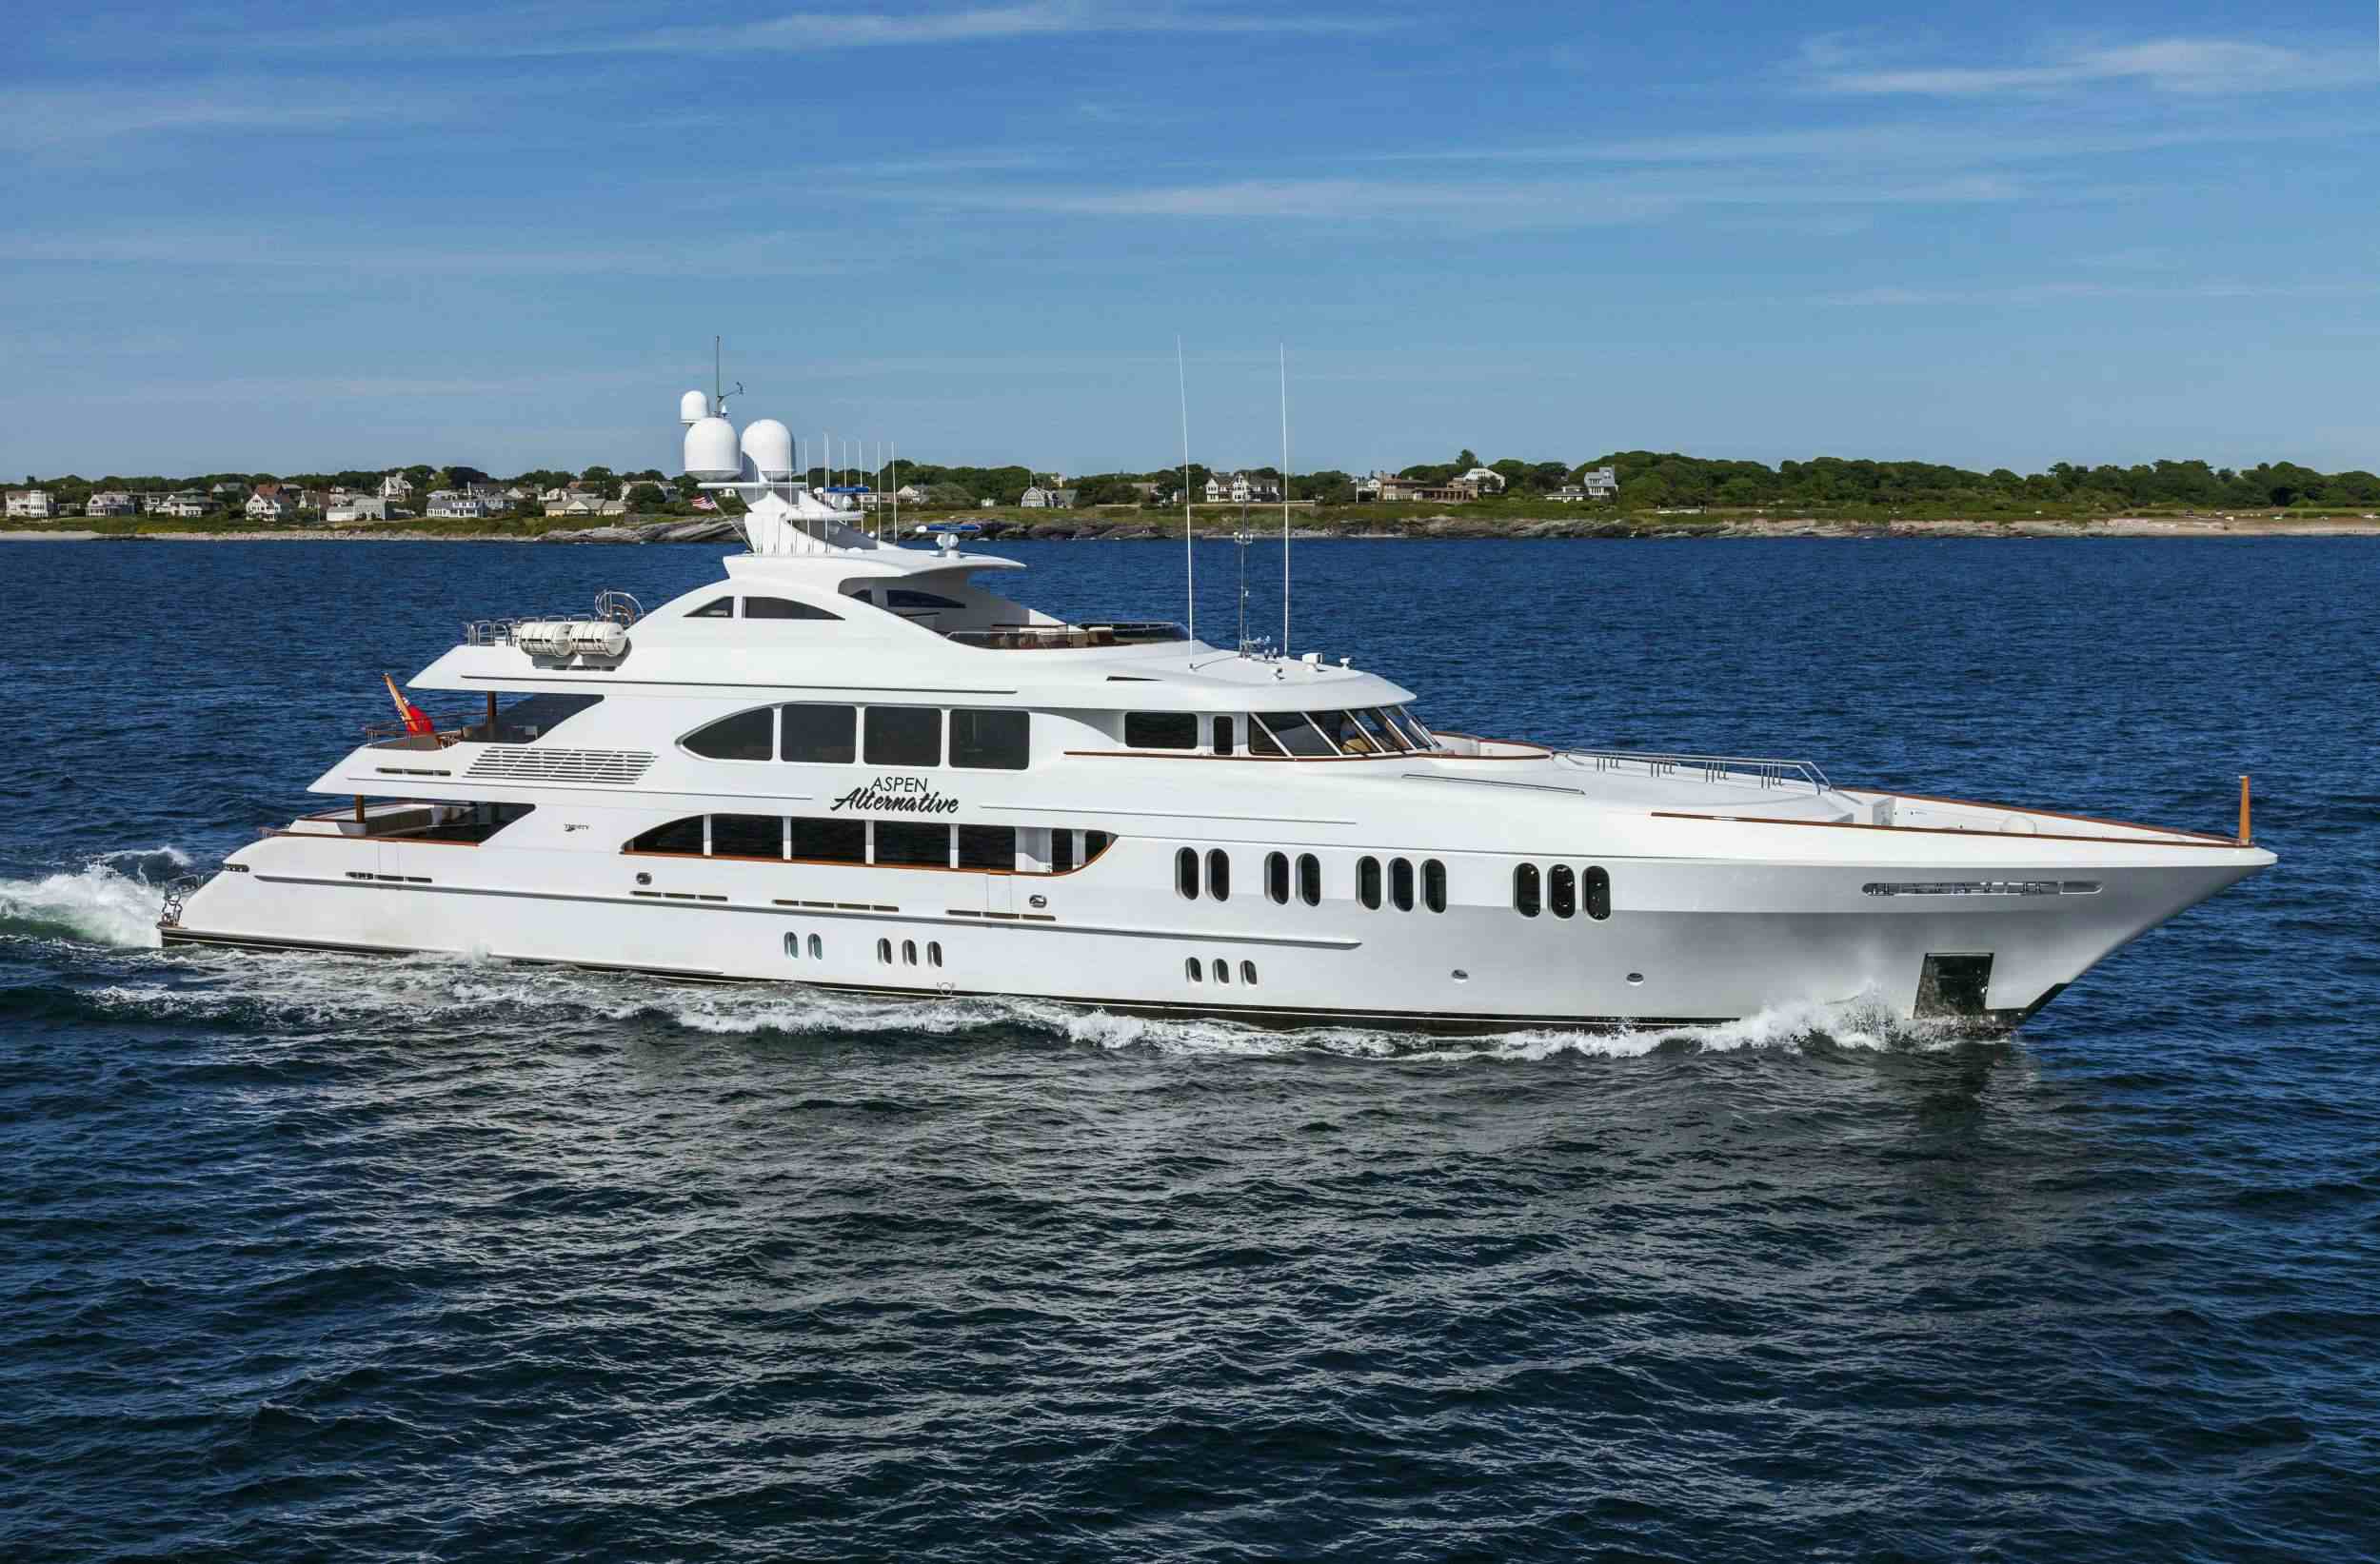 aspen alternative - Yacht Charter Bahamas & Boat hire in US East Coast & Bahamas 1